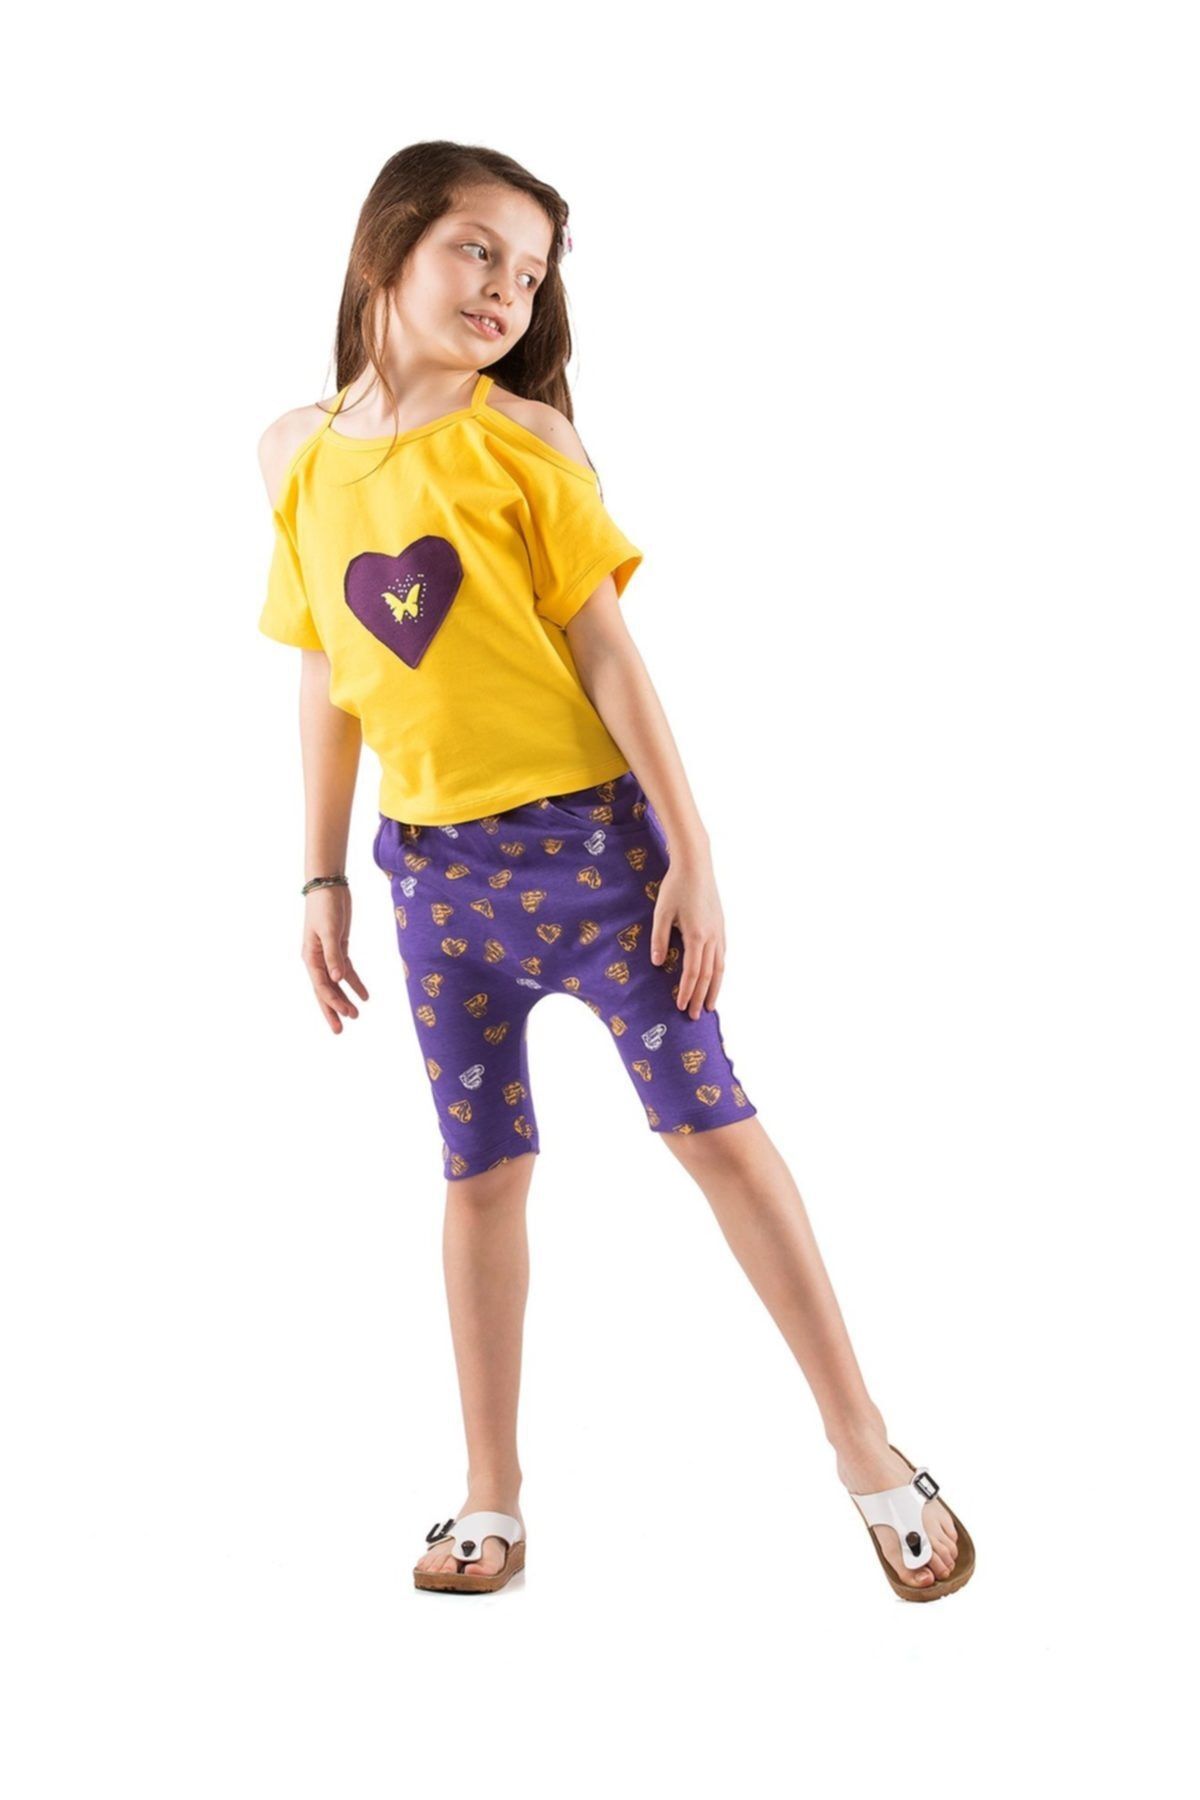 Kid's Choice Kalpli Mor Şort & Omuz Açık T-shirt Takım Kc-set176